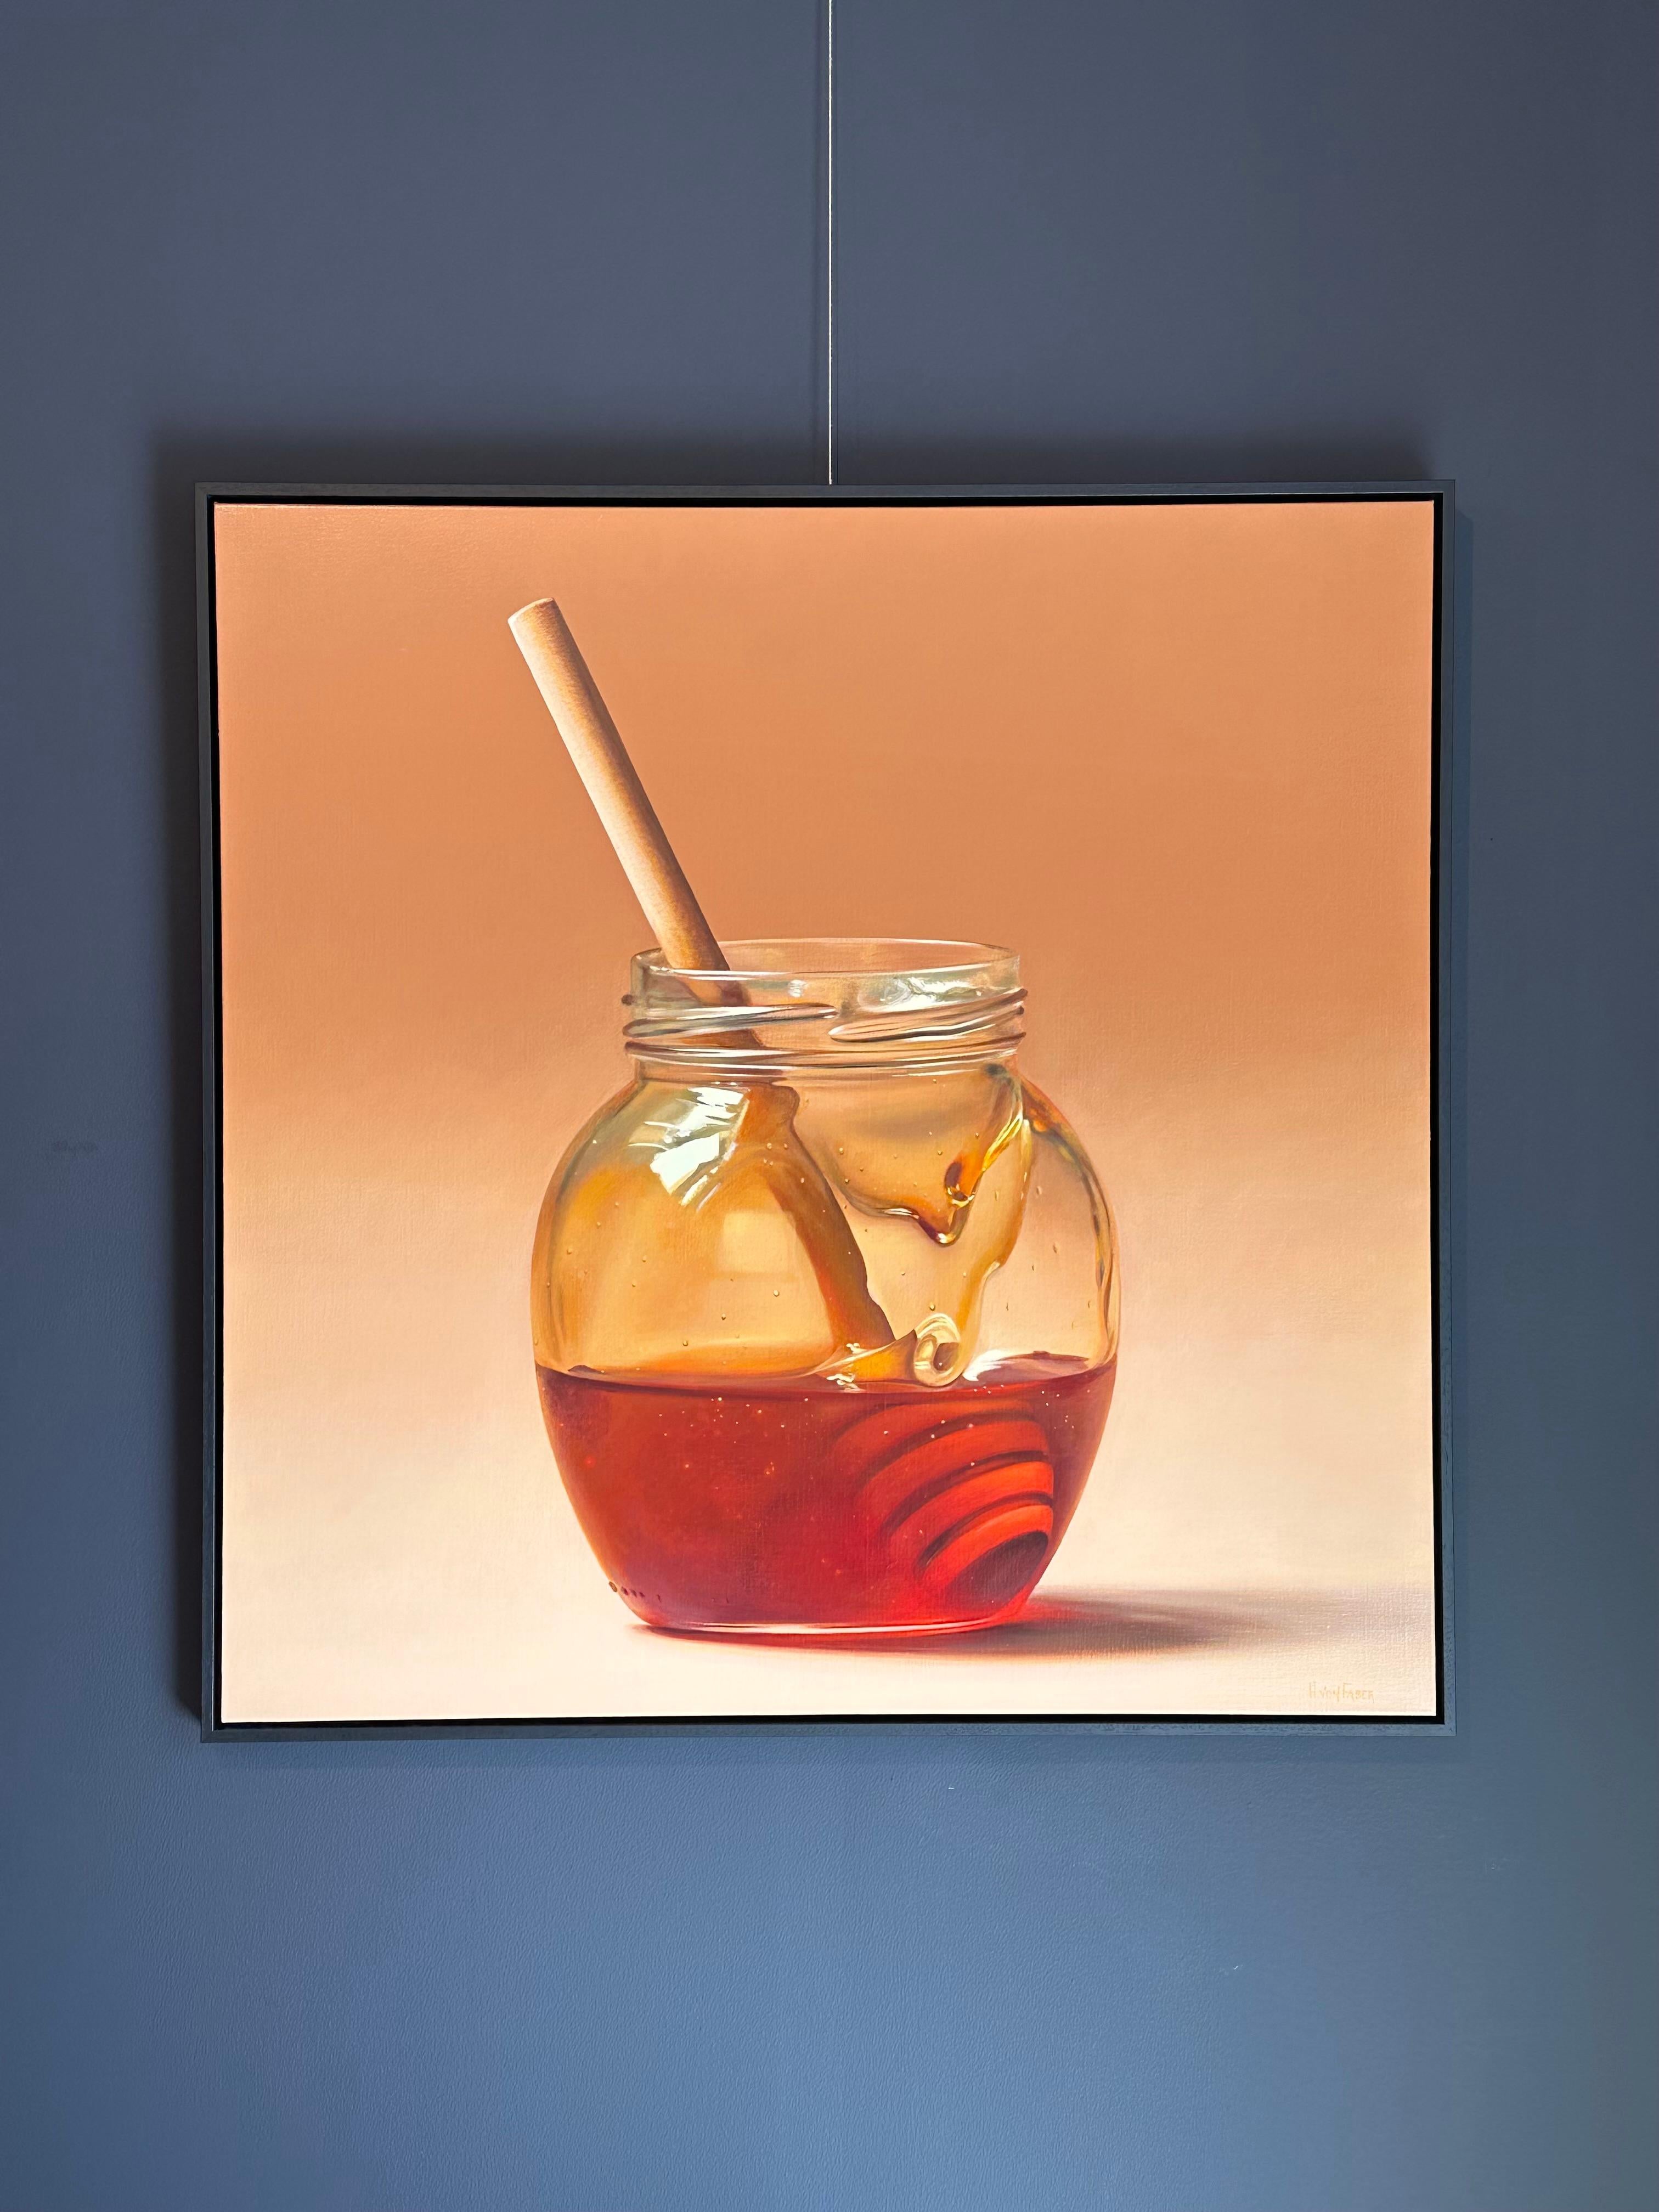 Cuillère à miel dans un JAR - 21e siècle - Peinture hyperréaliste de nature morte - Painting de Heidi von Faber